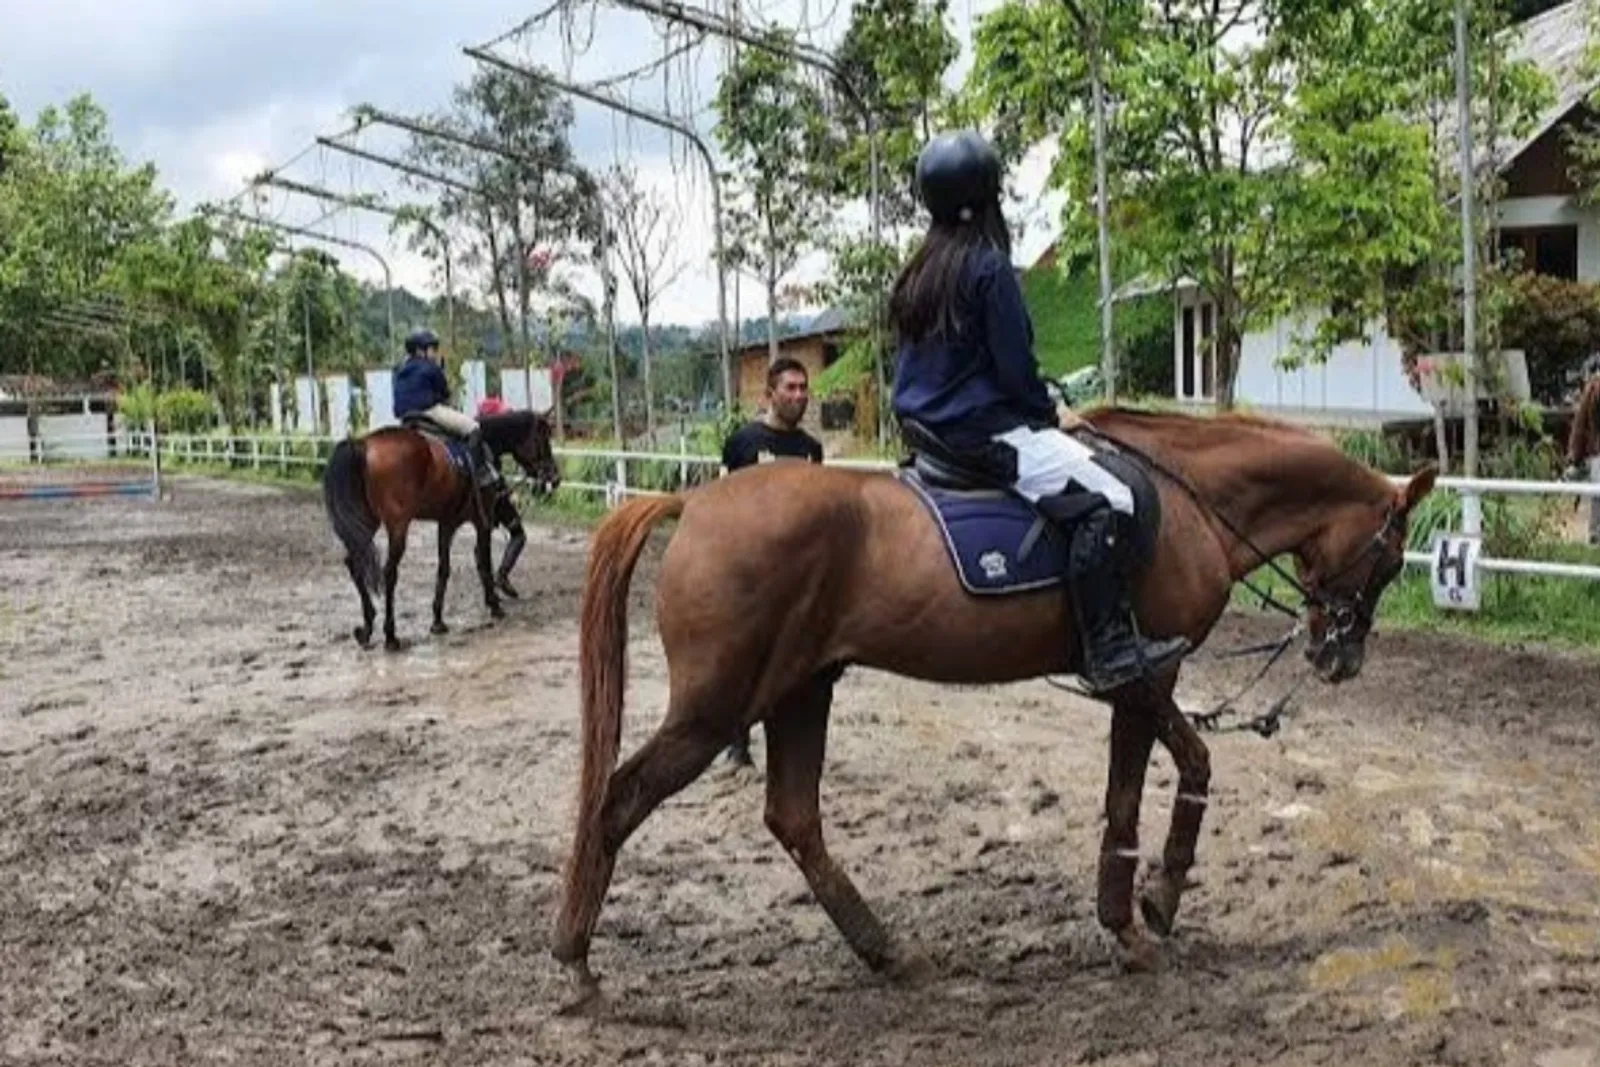 7 Wisata Berkuda di Bandung, Jadi Pilihan Liburan Seru!